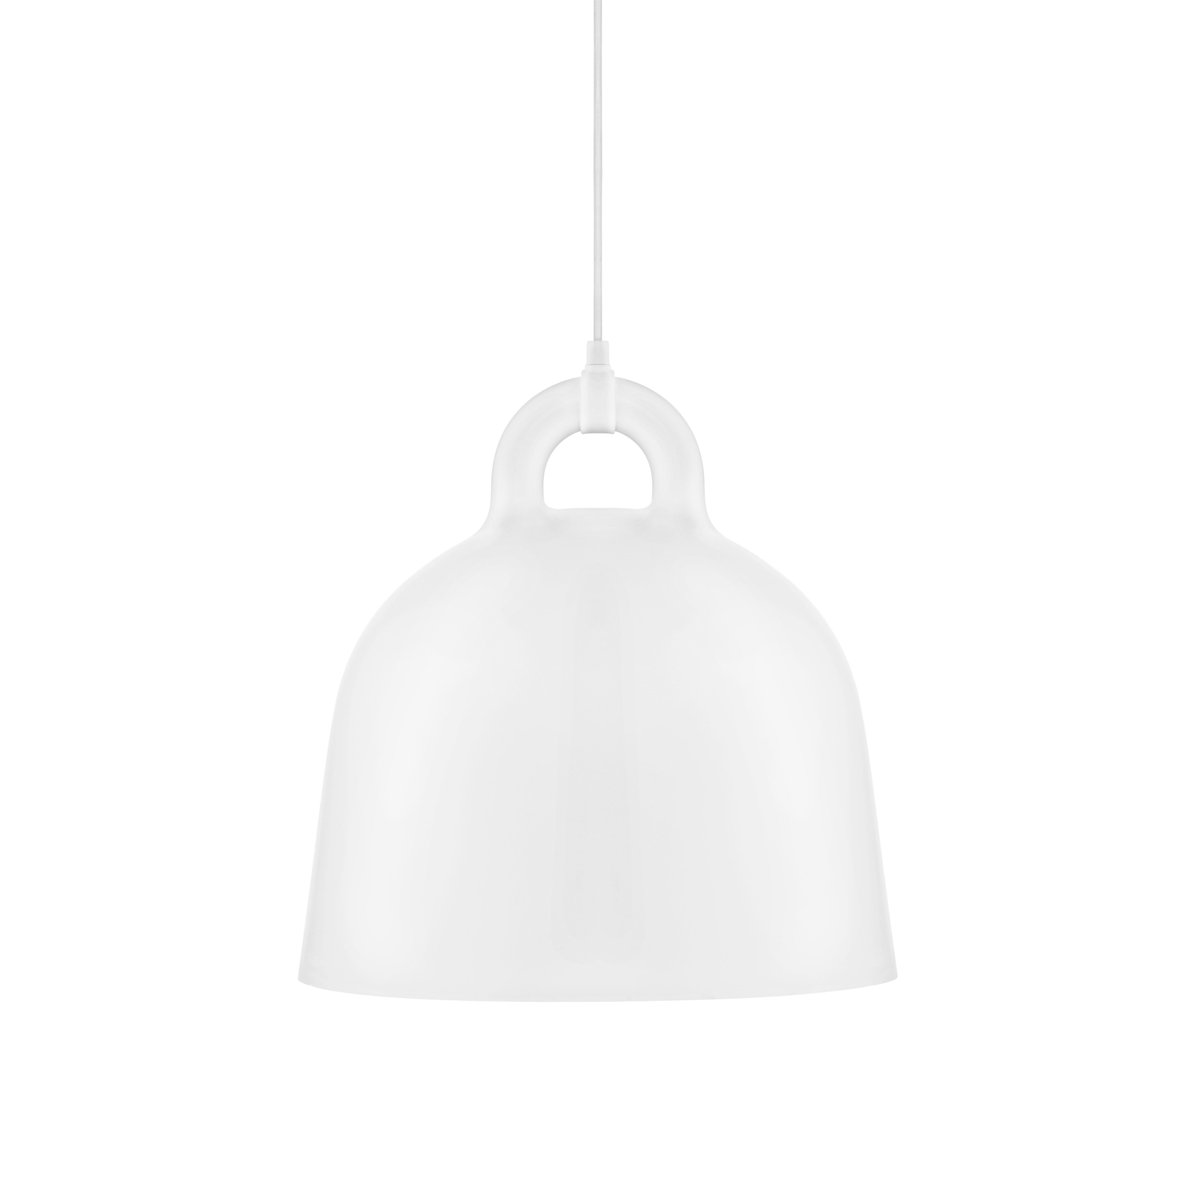 Normann Copenhagen Bell lampe hvid medium